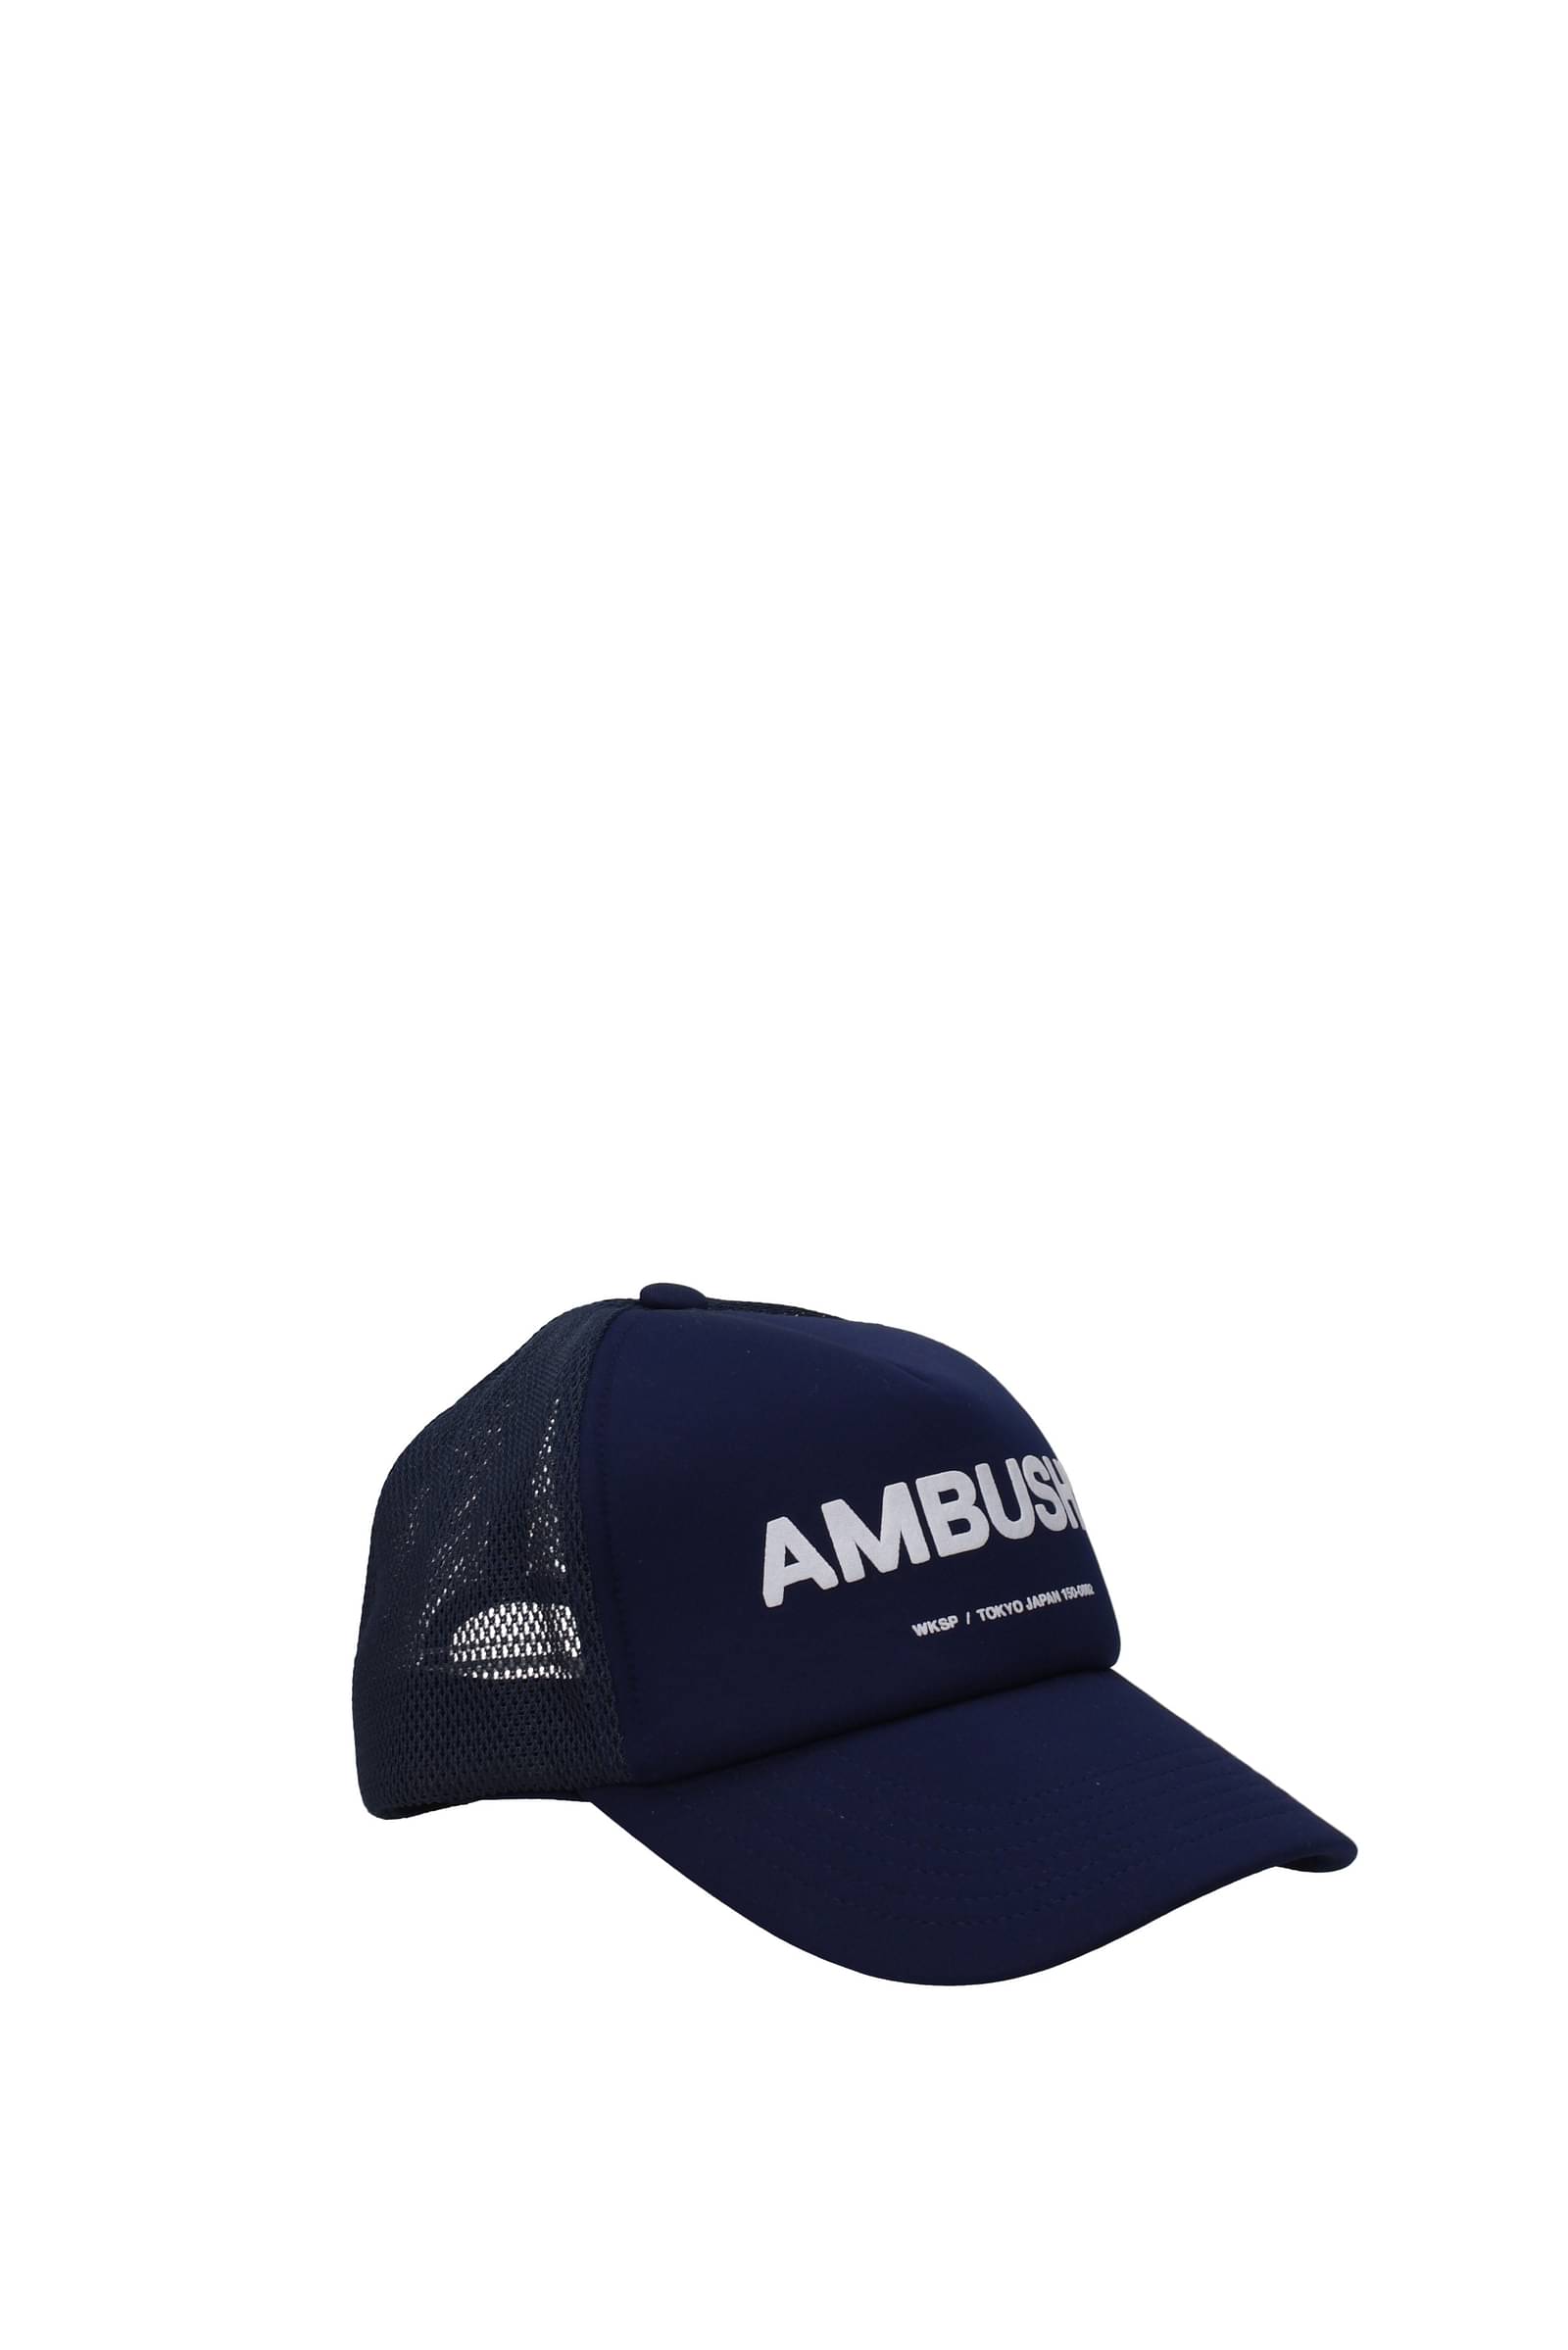 Ambush 帽子 男性 BMLB003FAB0014603 ポリエステル 青 ブルーネイビー